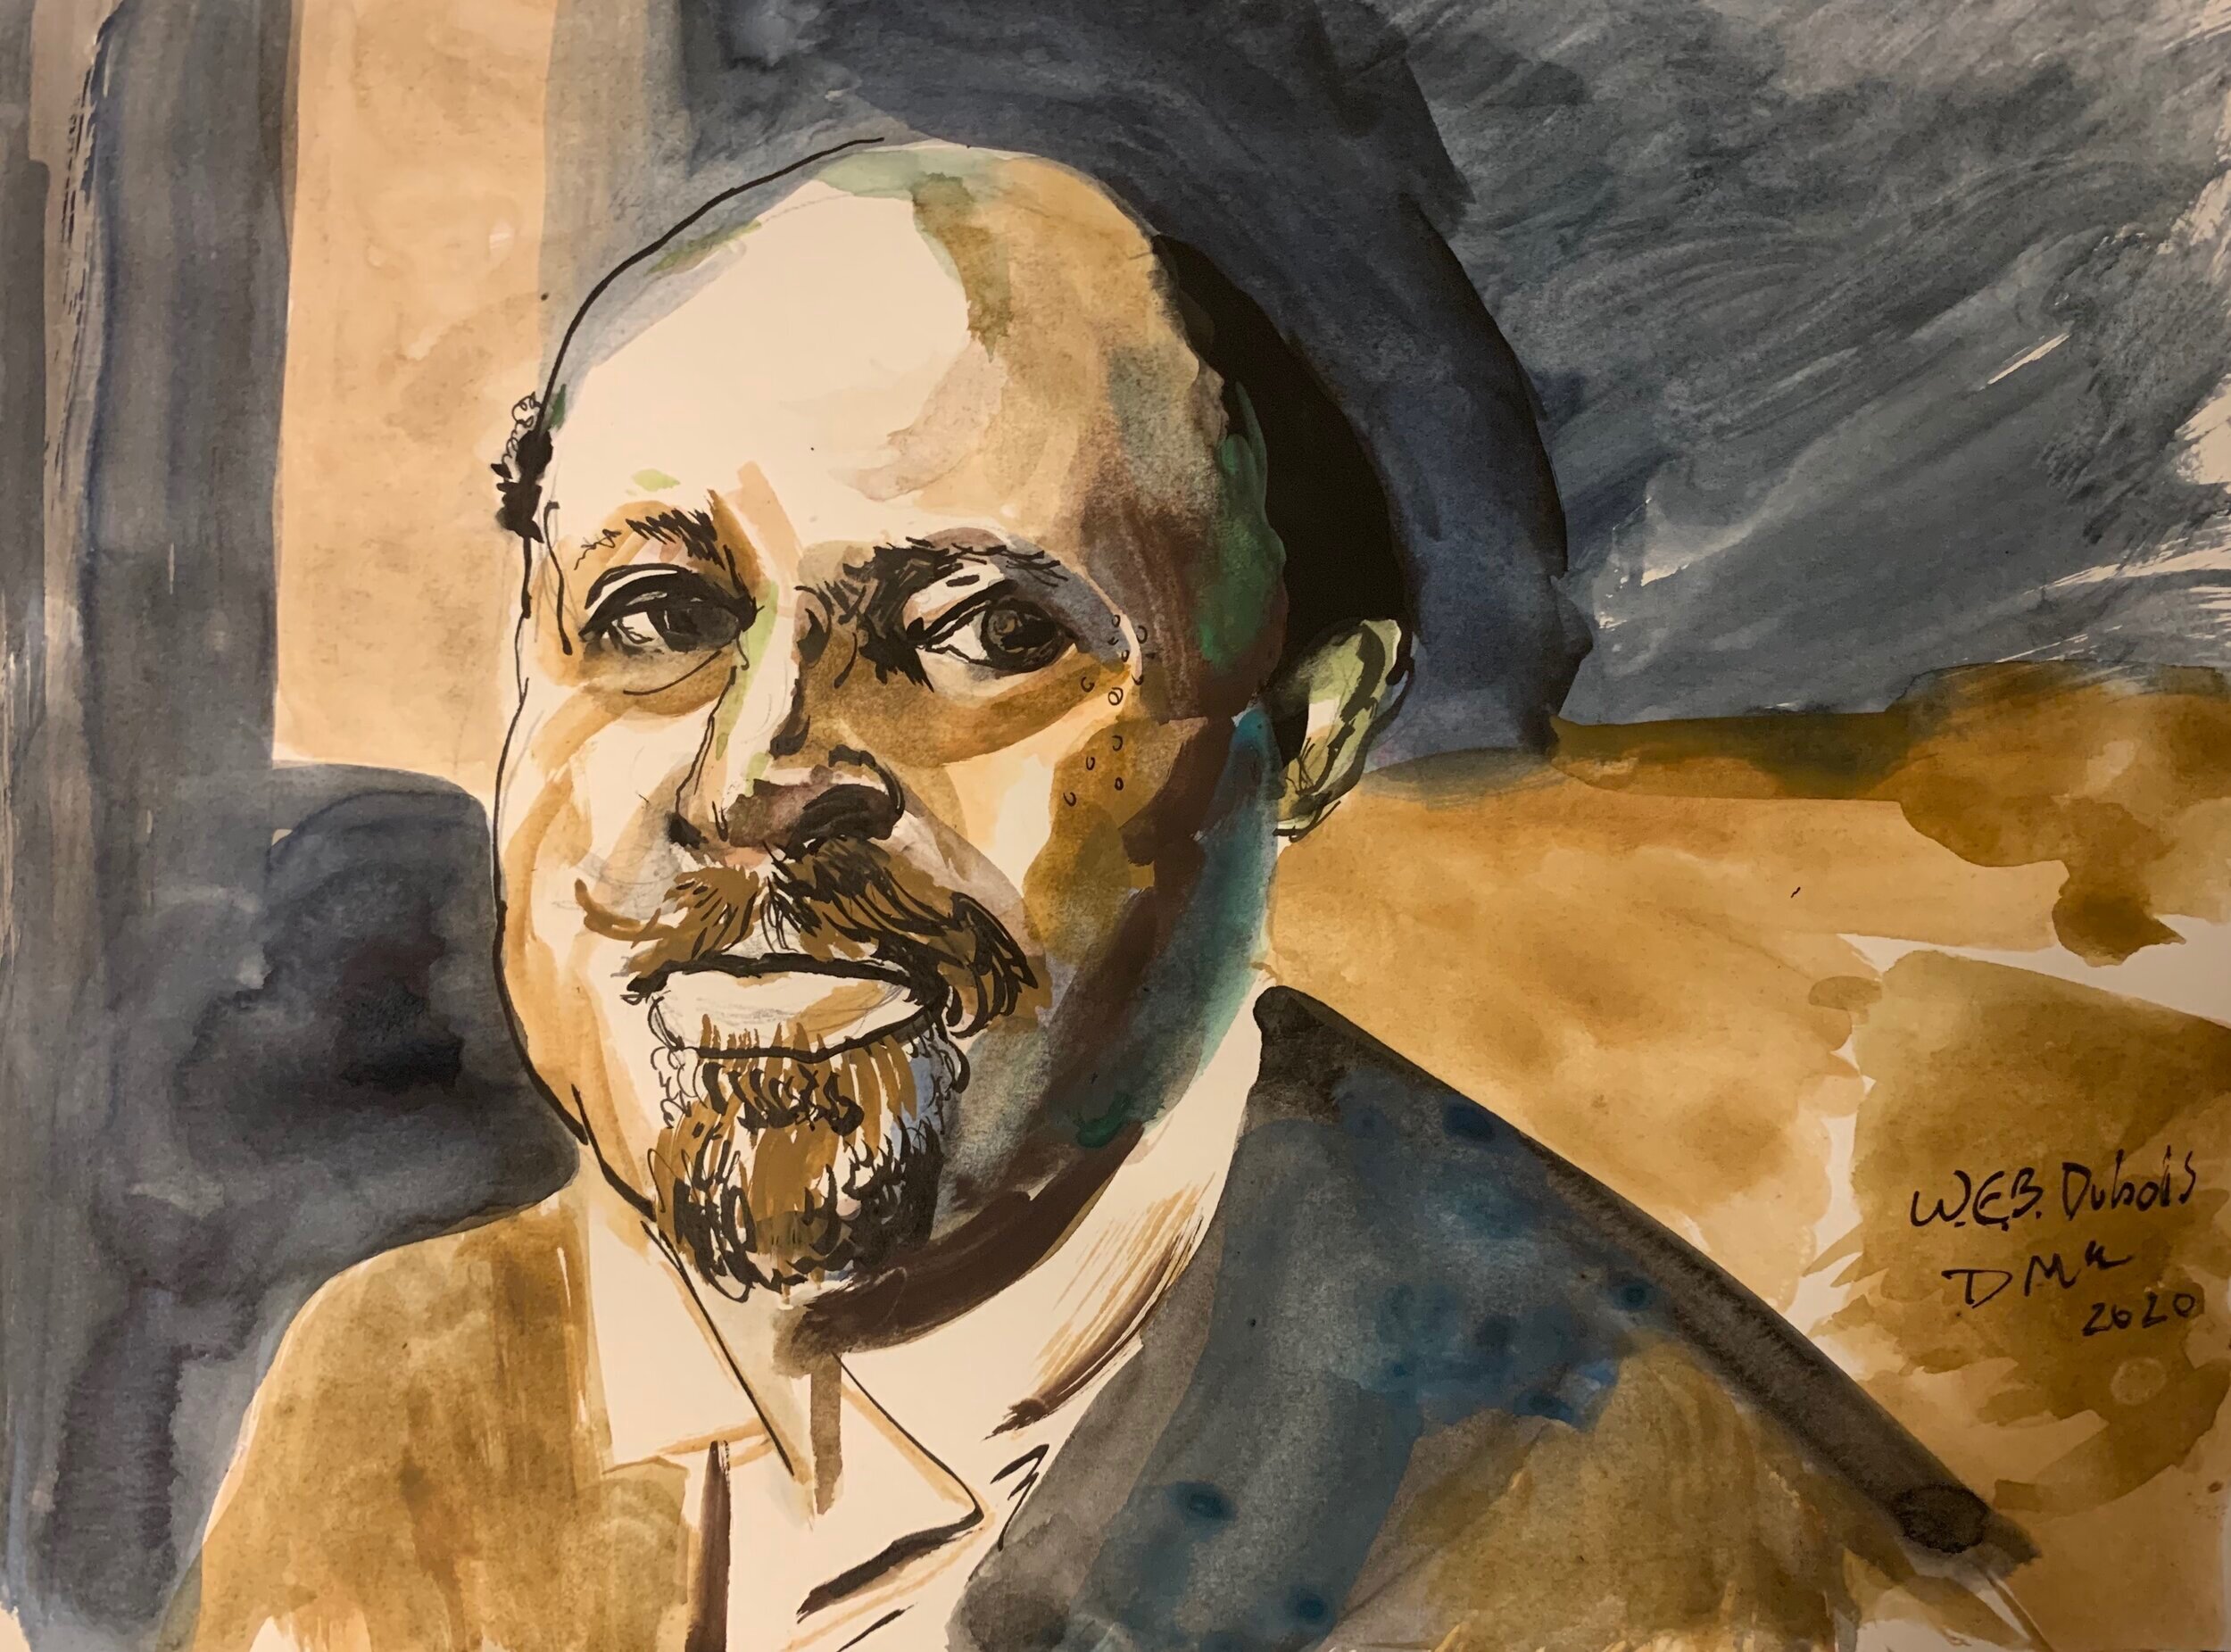 W.E.B. Du Bois, 2020.  